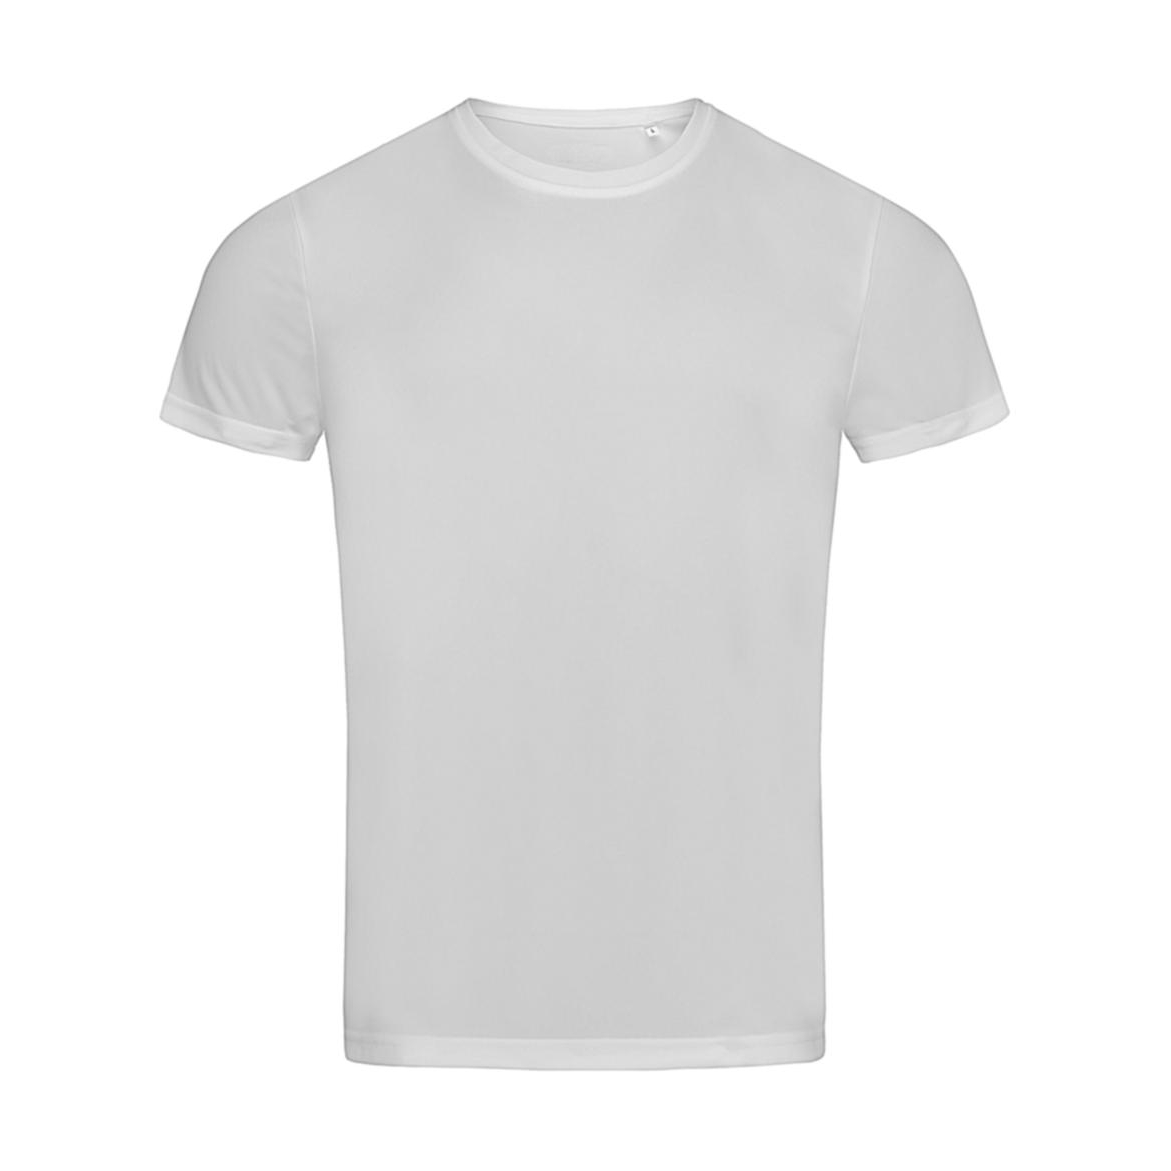 Triko pánské Stedman sportovní tričko - bílé, XL